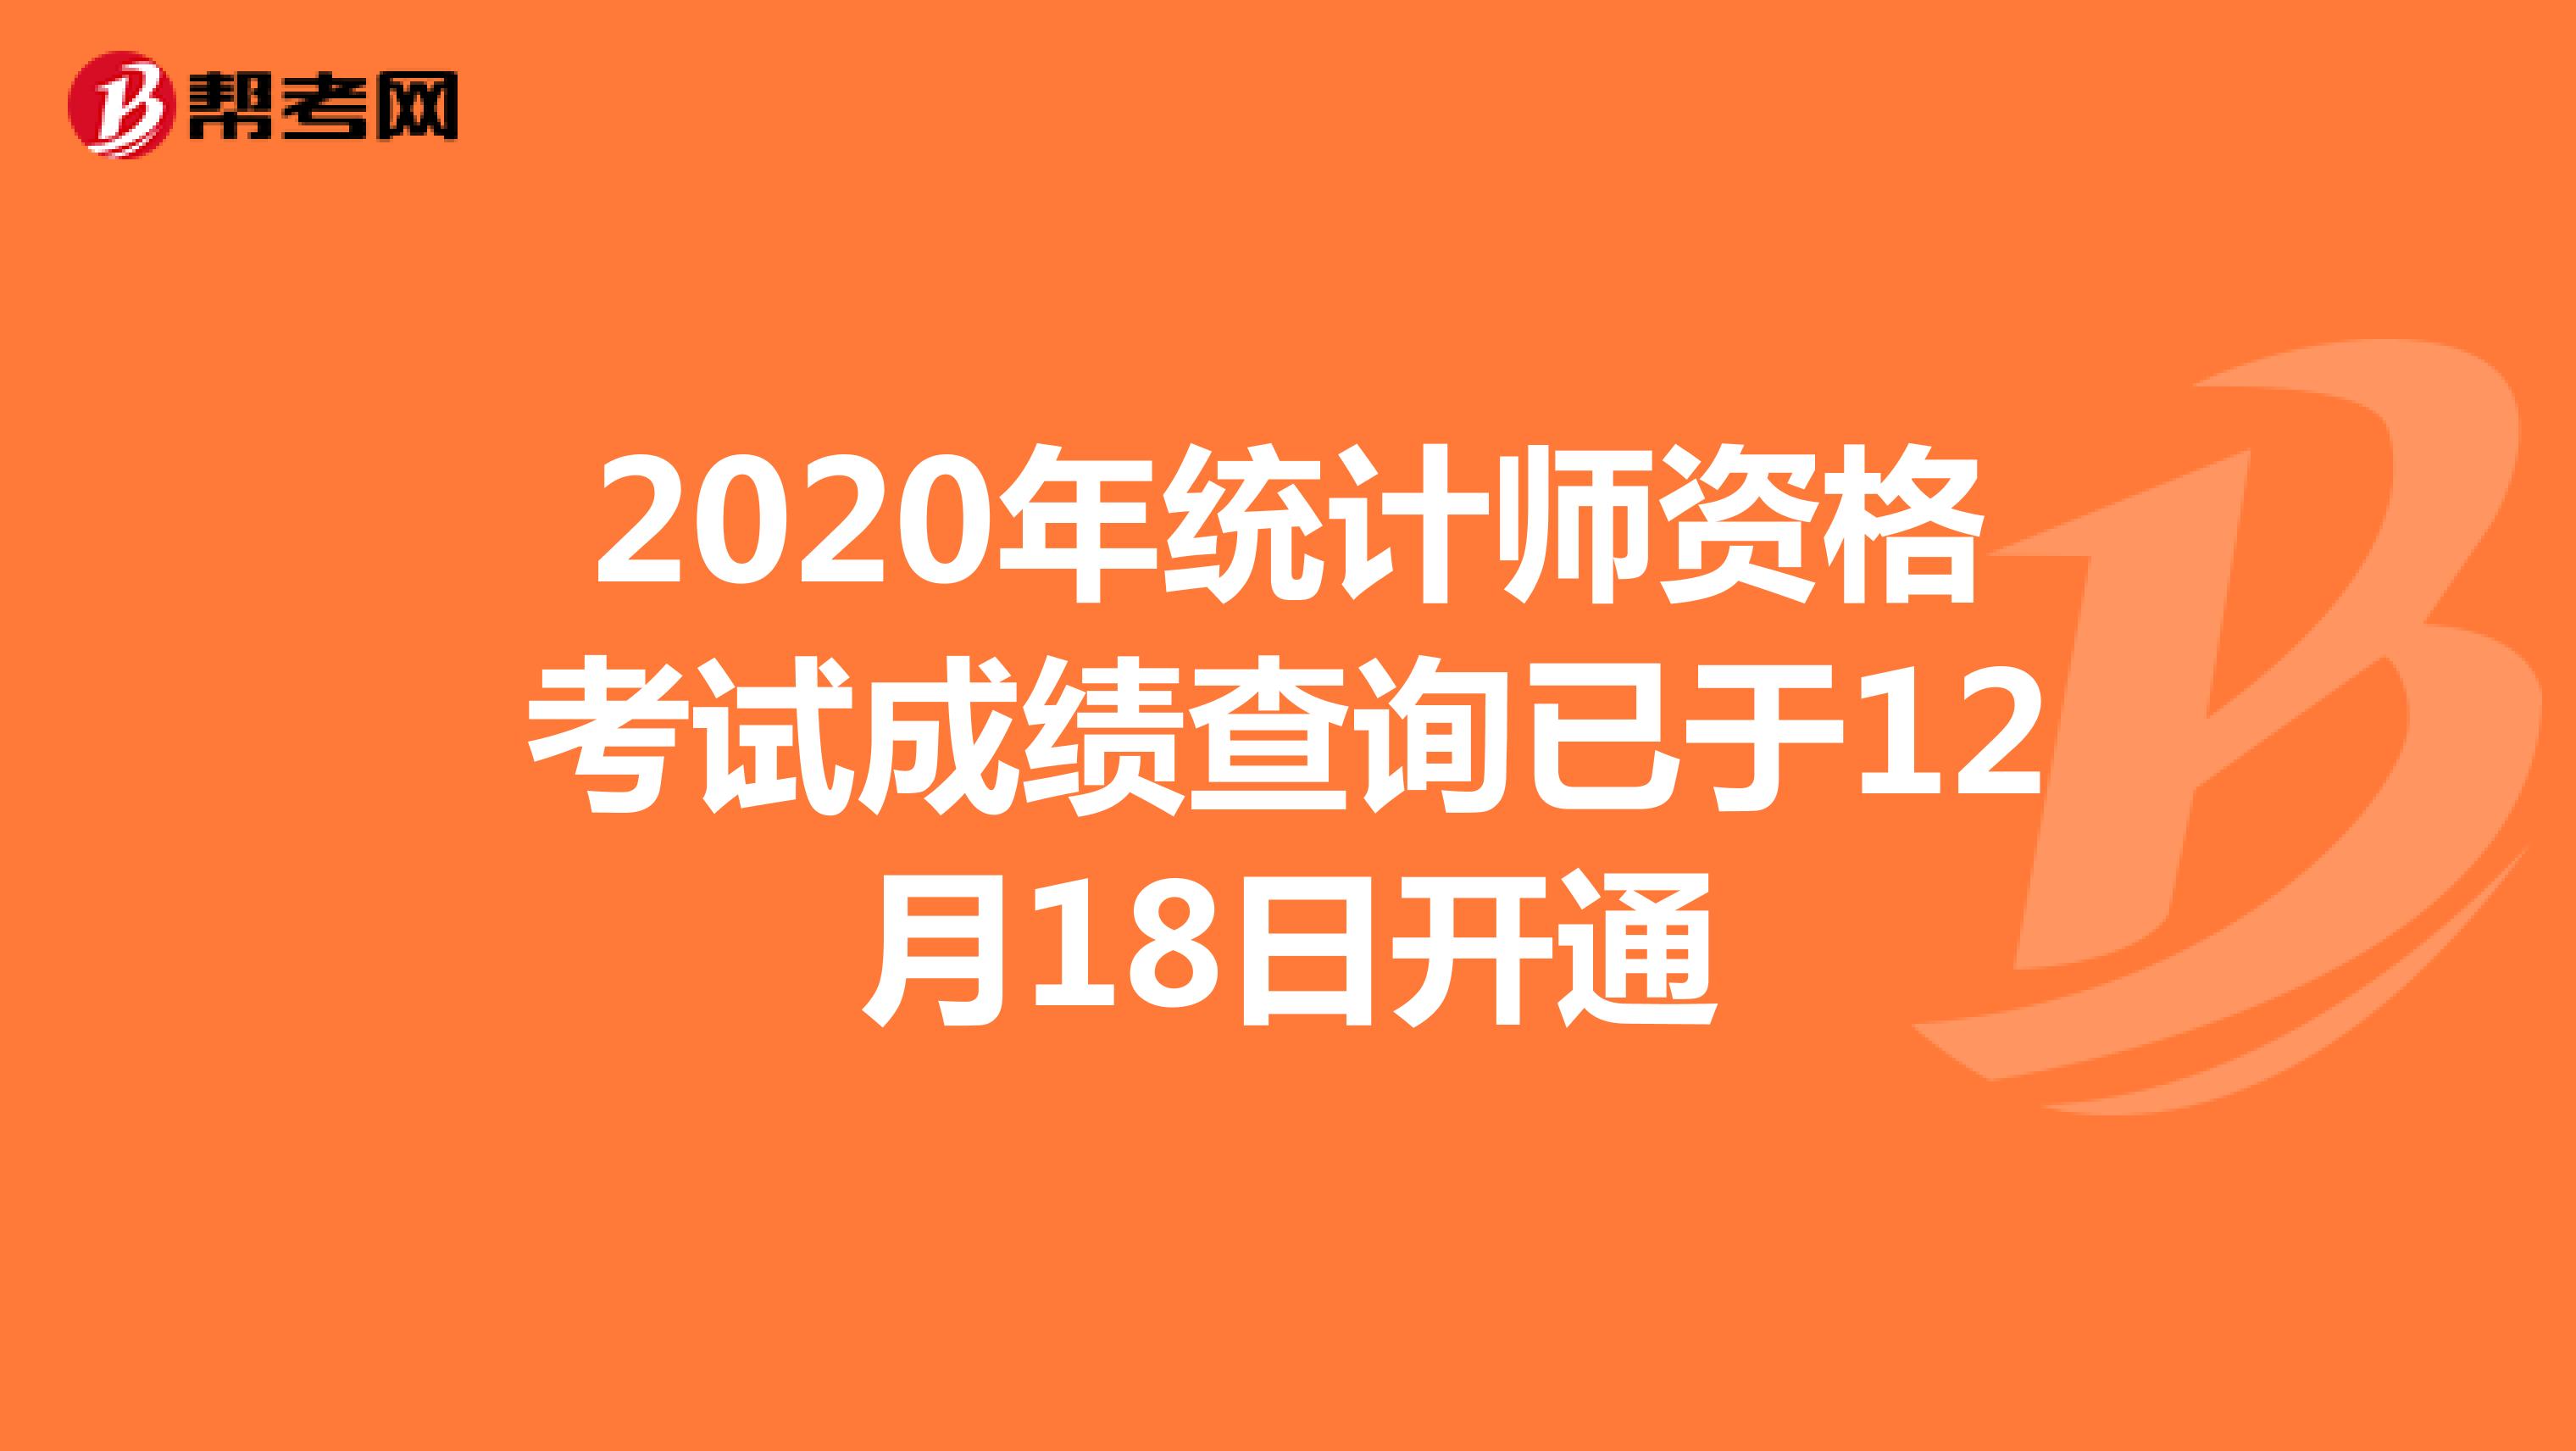 12月18日将开通2020年统计师考试成绩查询入口